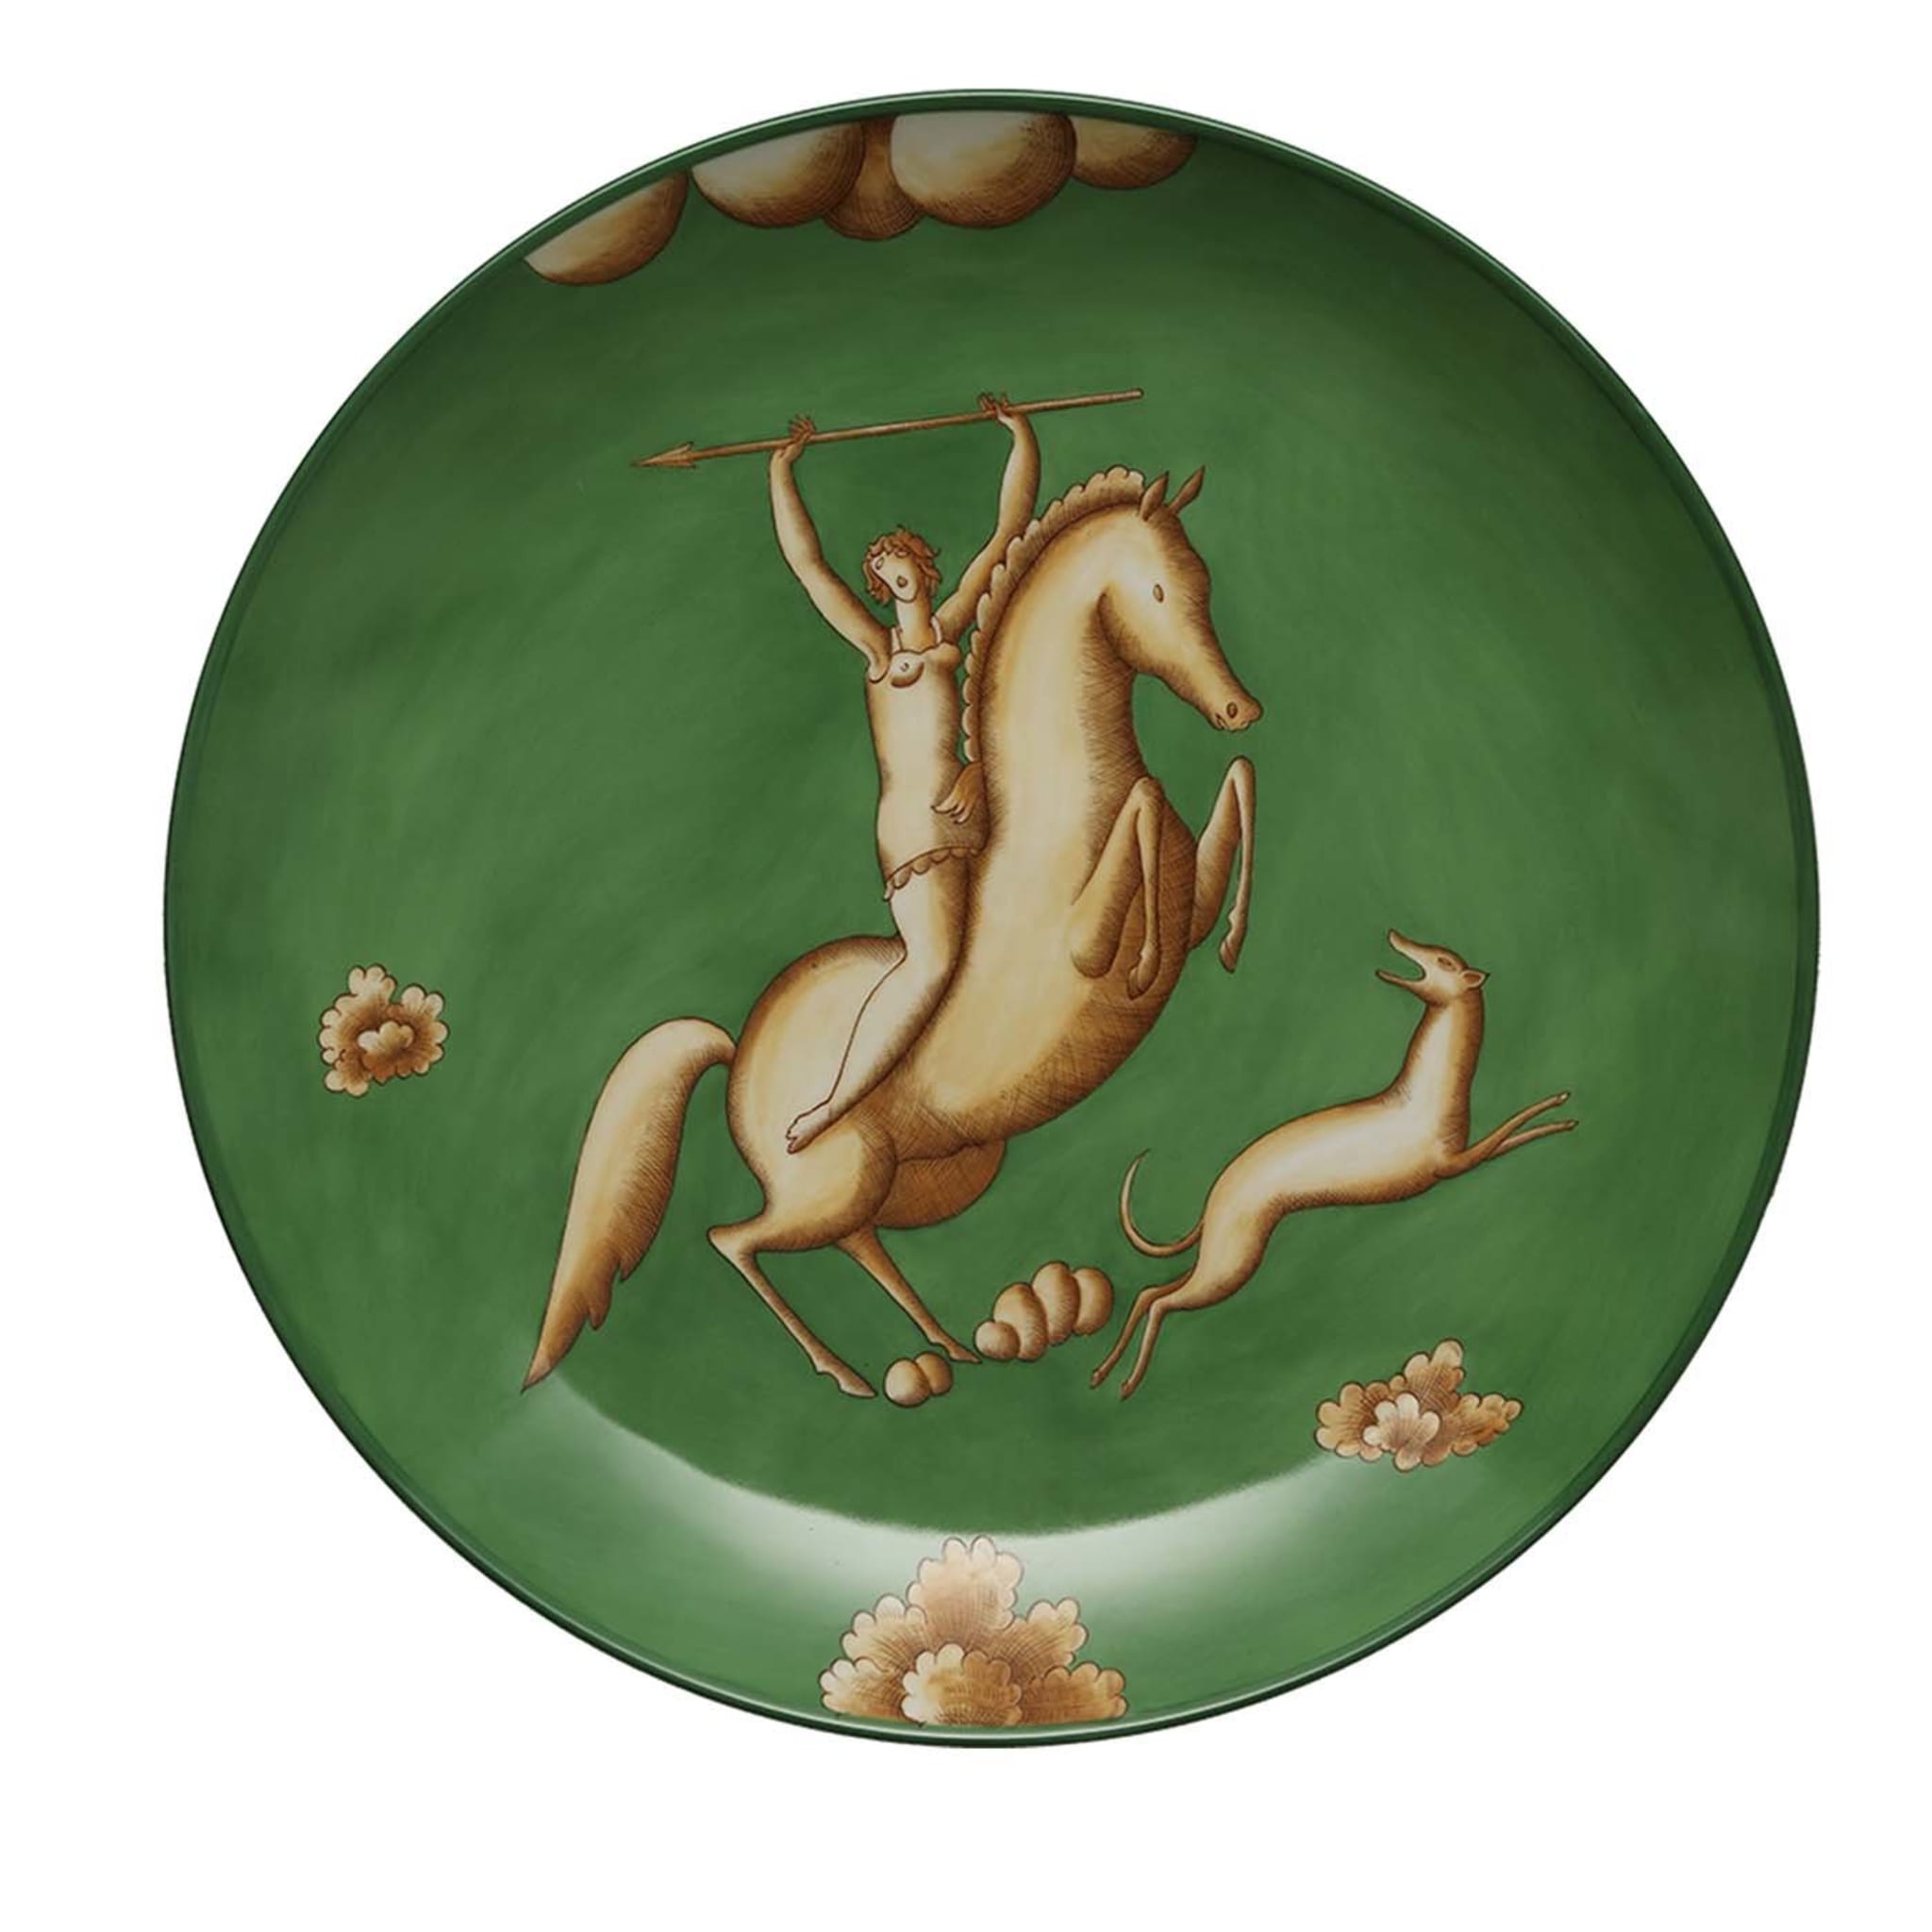 La Venatoria Green Amazon Plate - Limited Edition - Main view